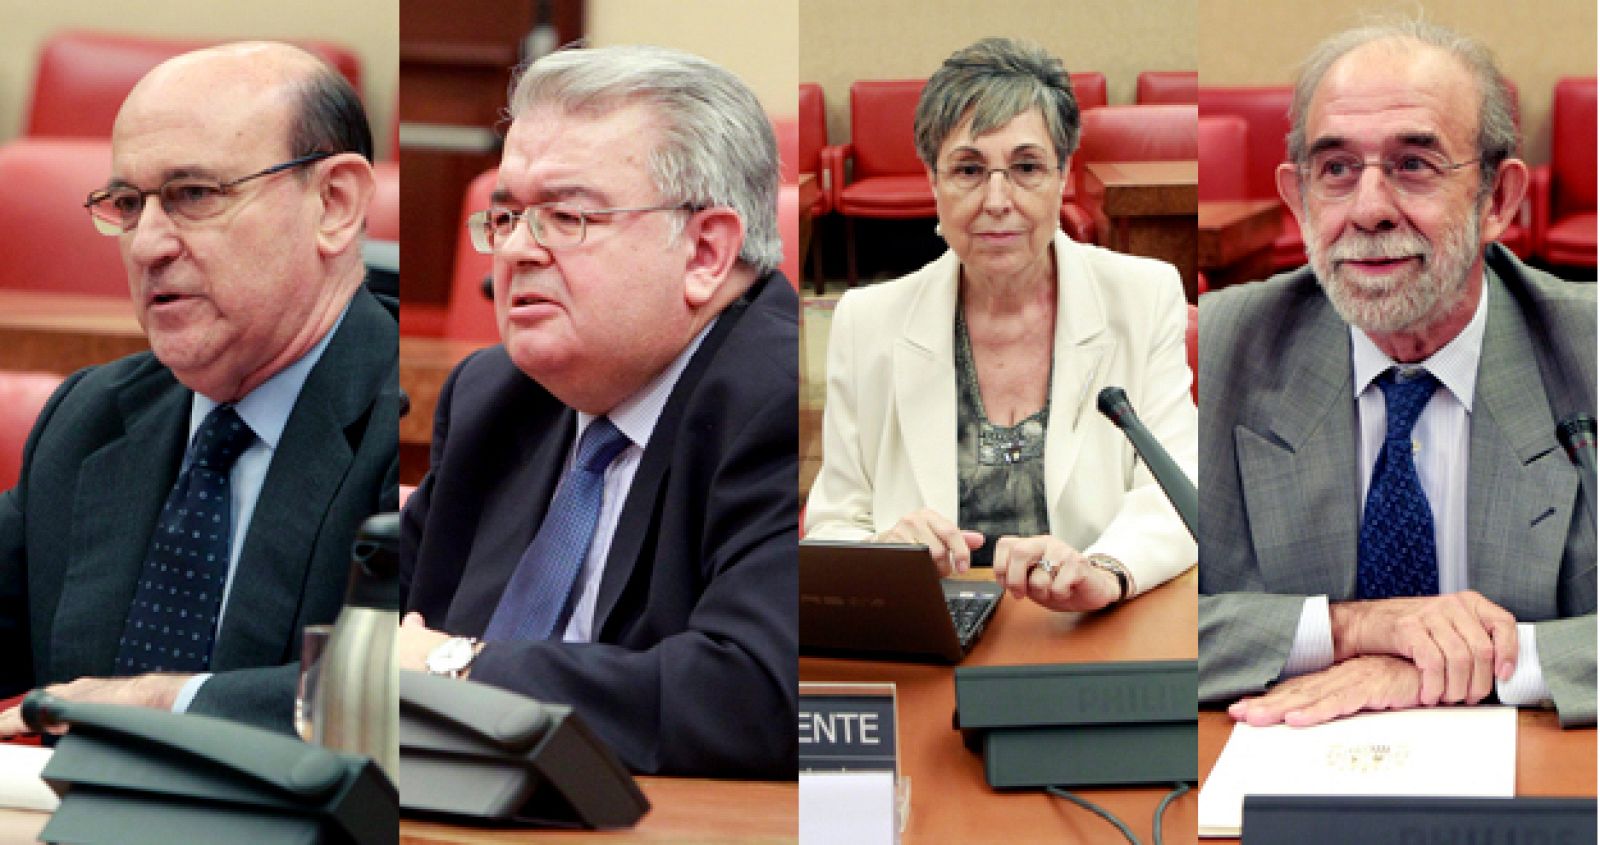 Los cuatro futuros magistrados del Tribunal Constitucional (de izqda a dcha): Carlos Ollero, Juan José González Rivas, Encarnación Roca y Fernando Valdés.